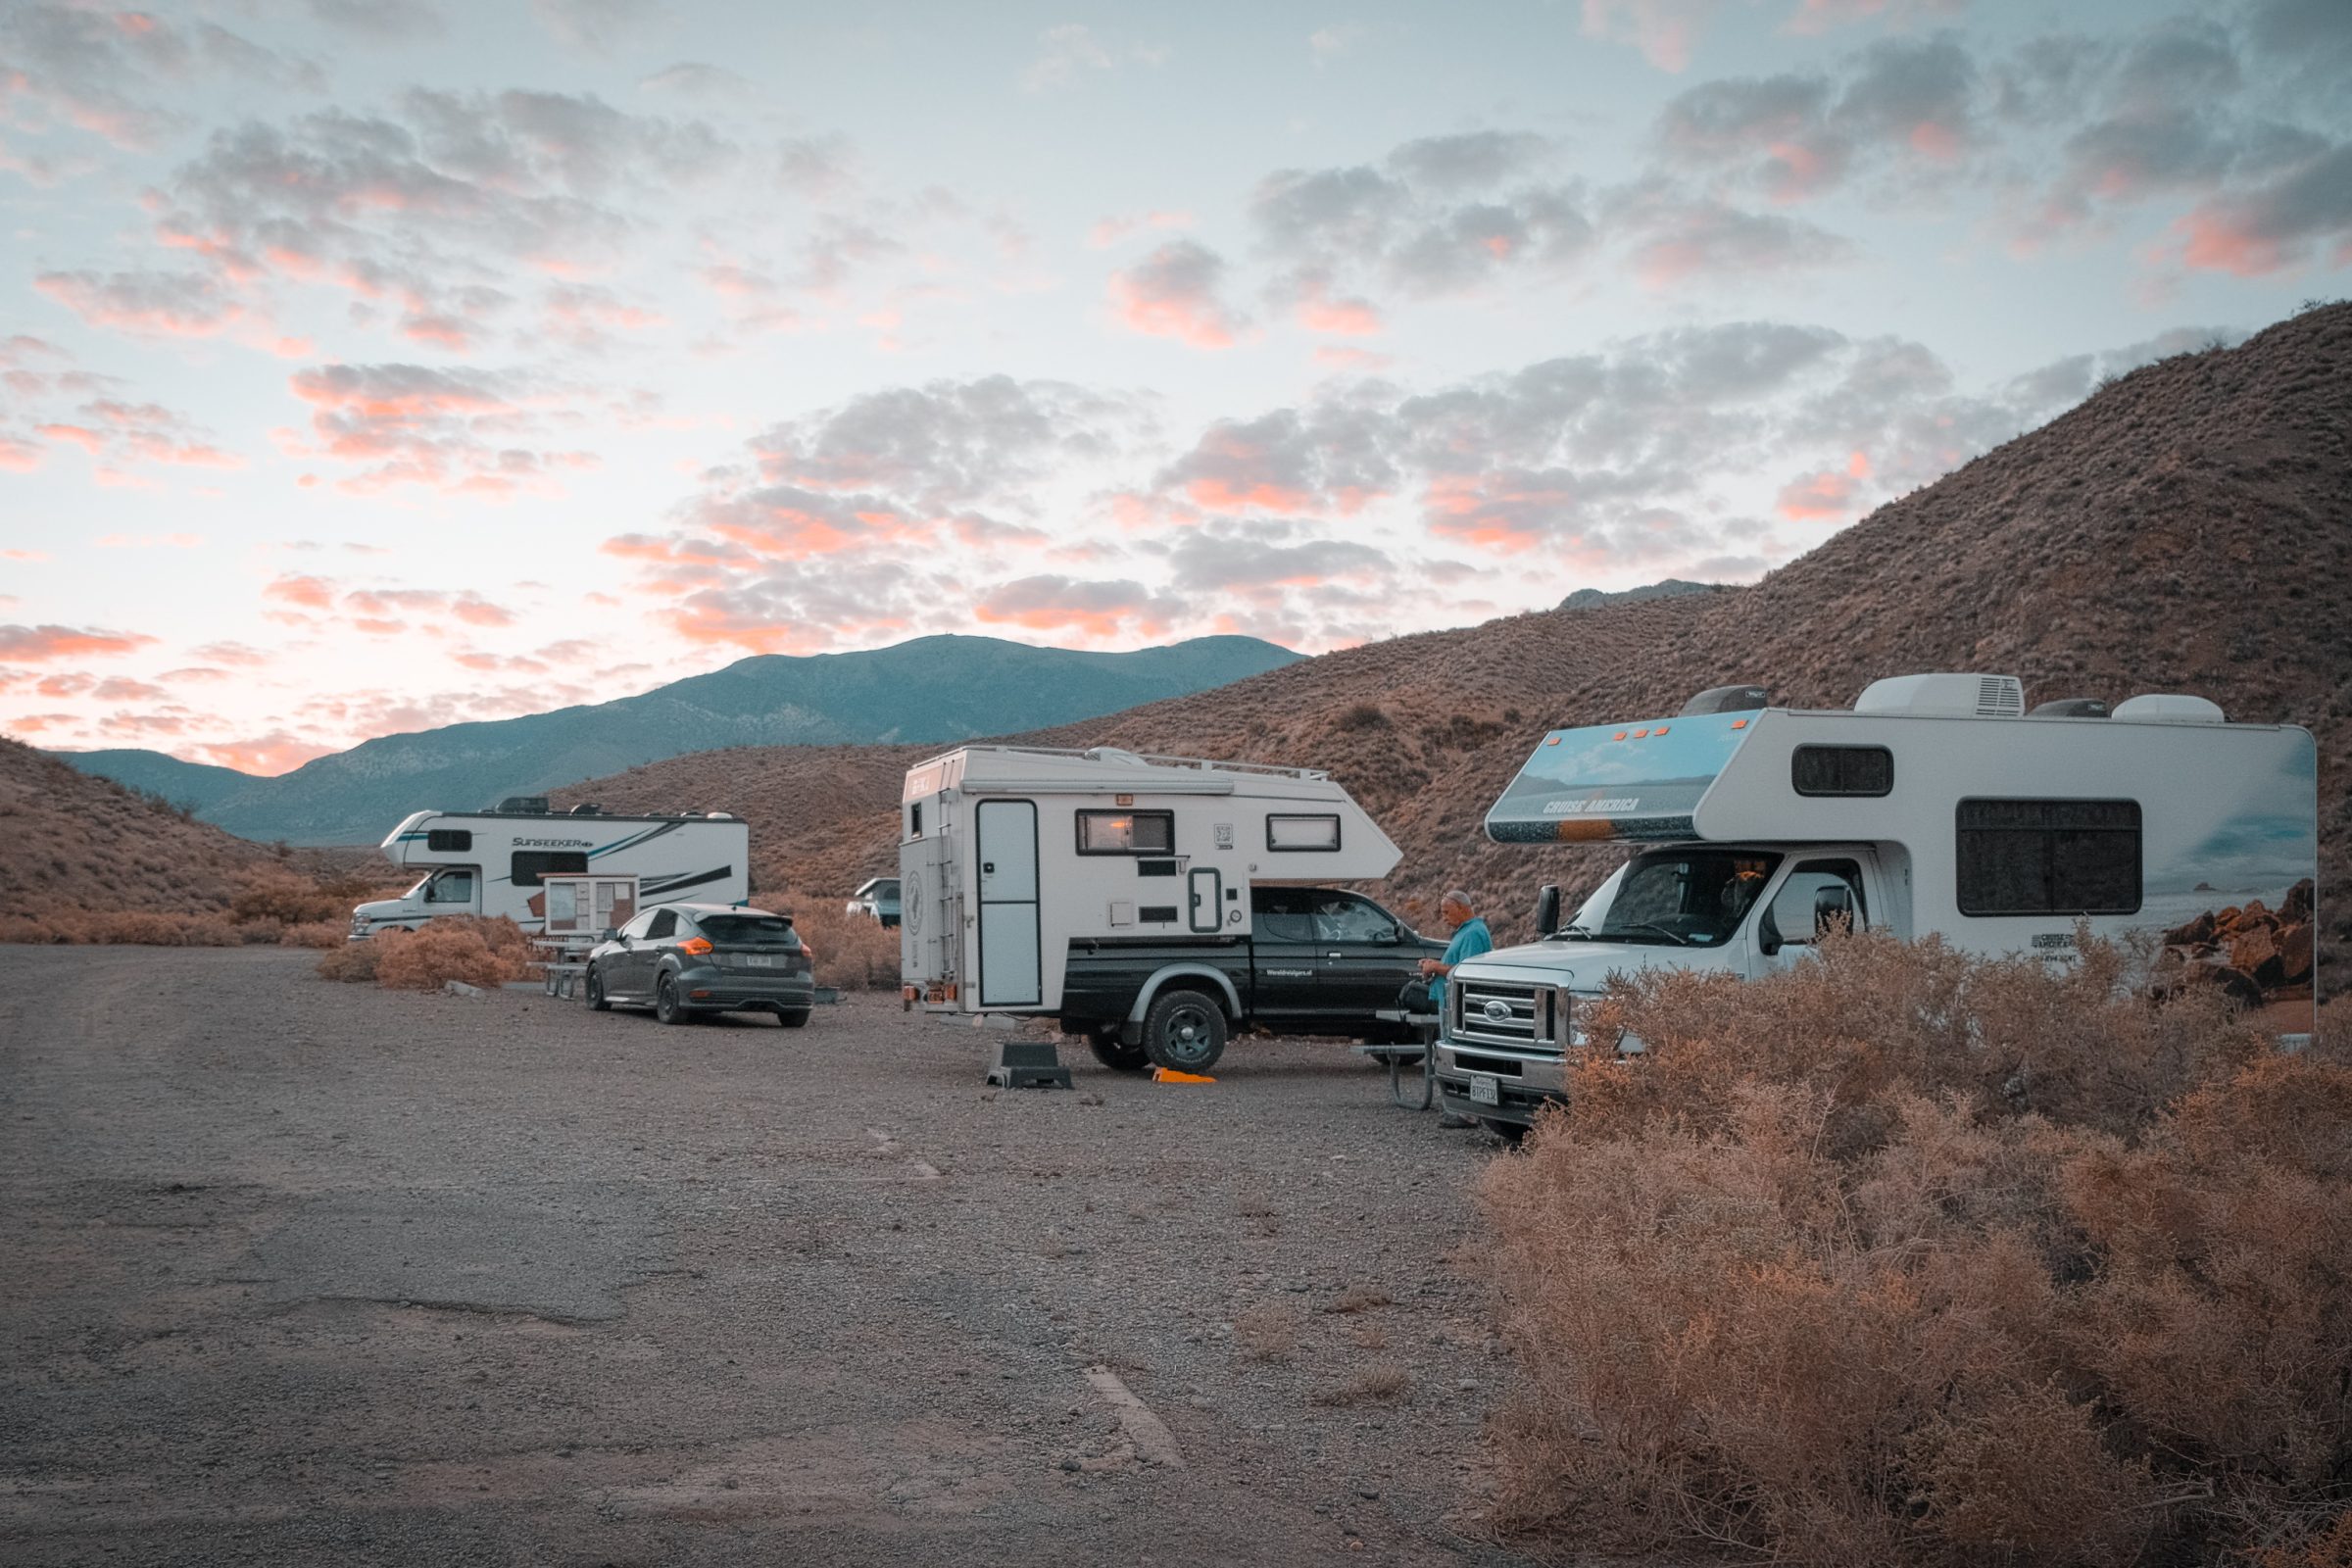 Wildrose acampamento | Dicas para o Vale da Morte